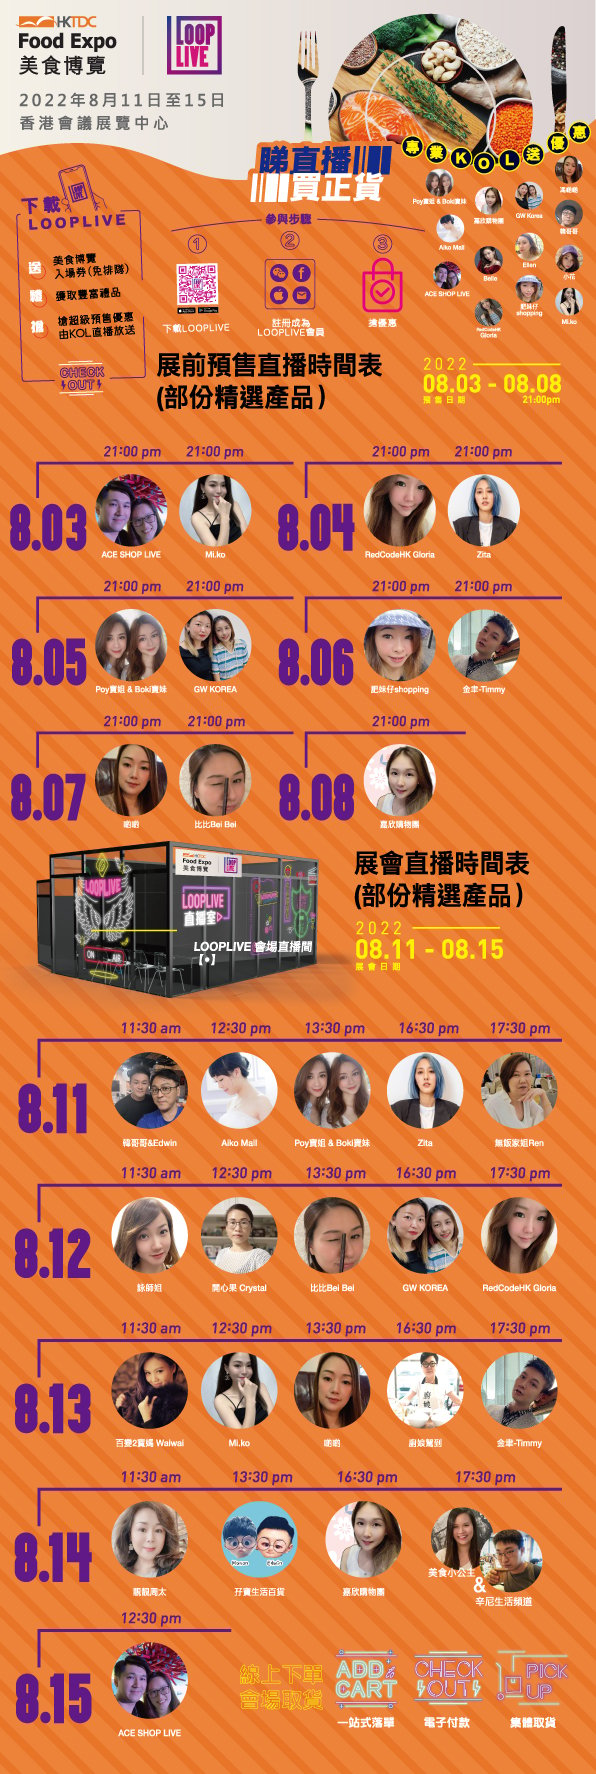 香港貿發局美食博覽LOOPLIVE KOL直播推廣時間表